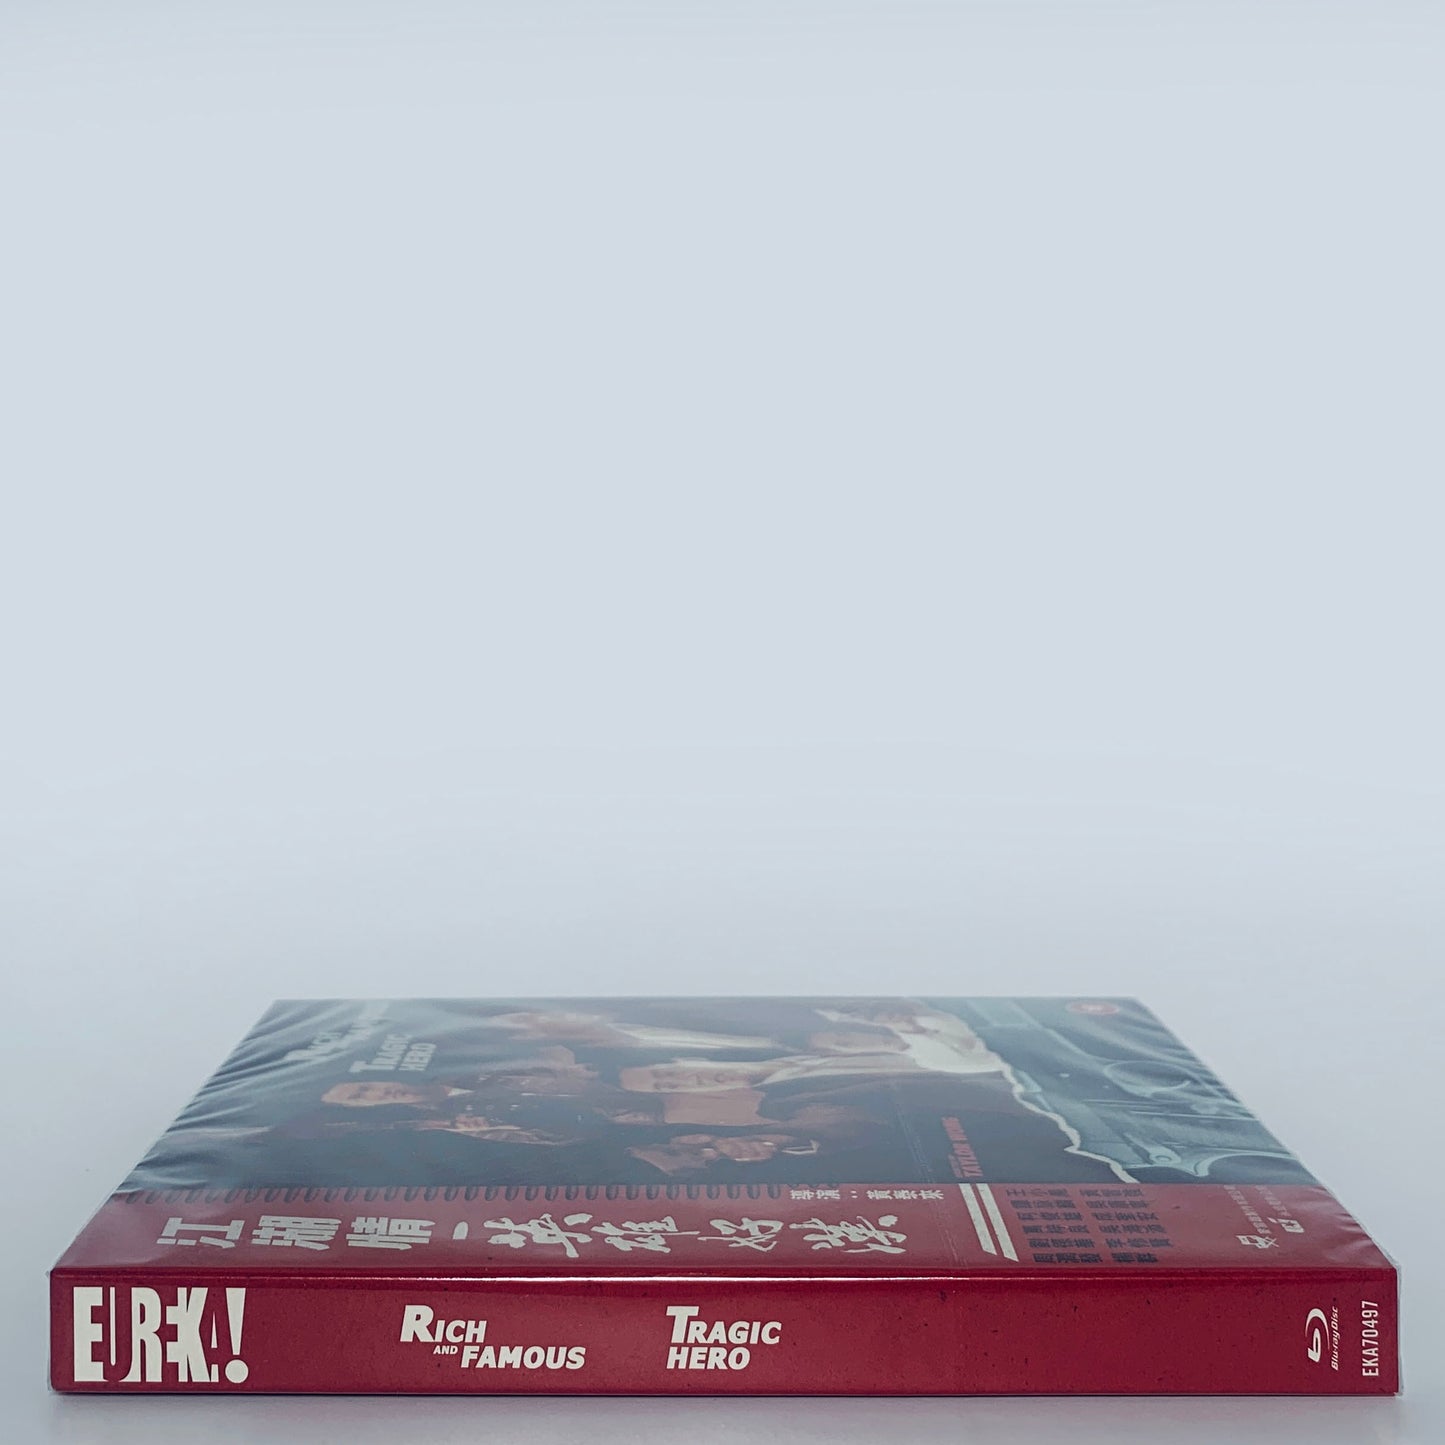 Rich and Famous Tragic Hero Chow Yun Fat 2-Disc Blu-ray Eureka UK 2 II